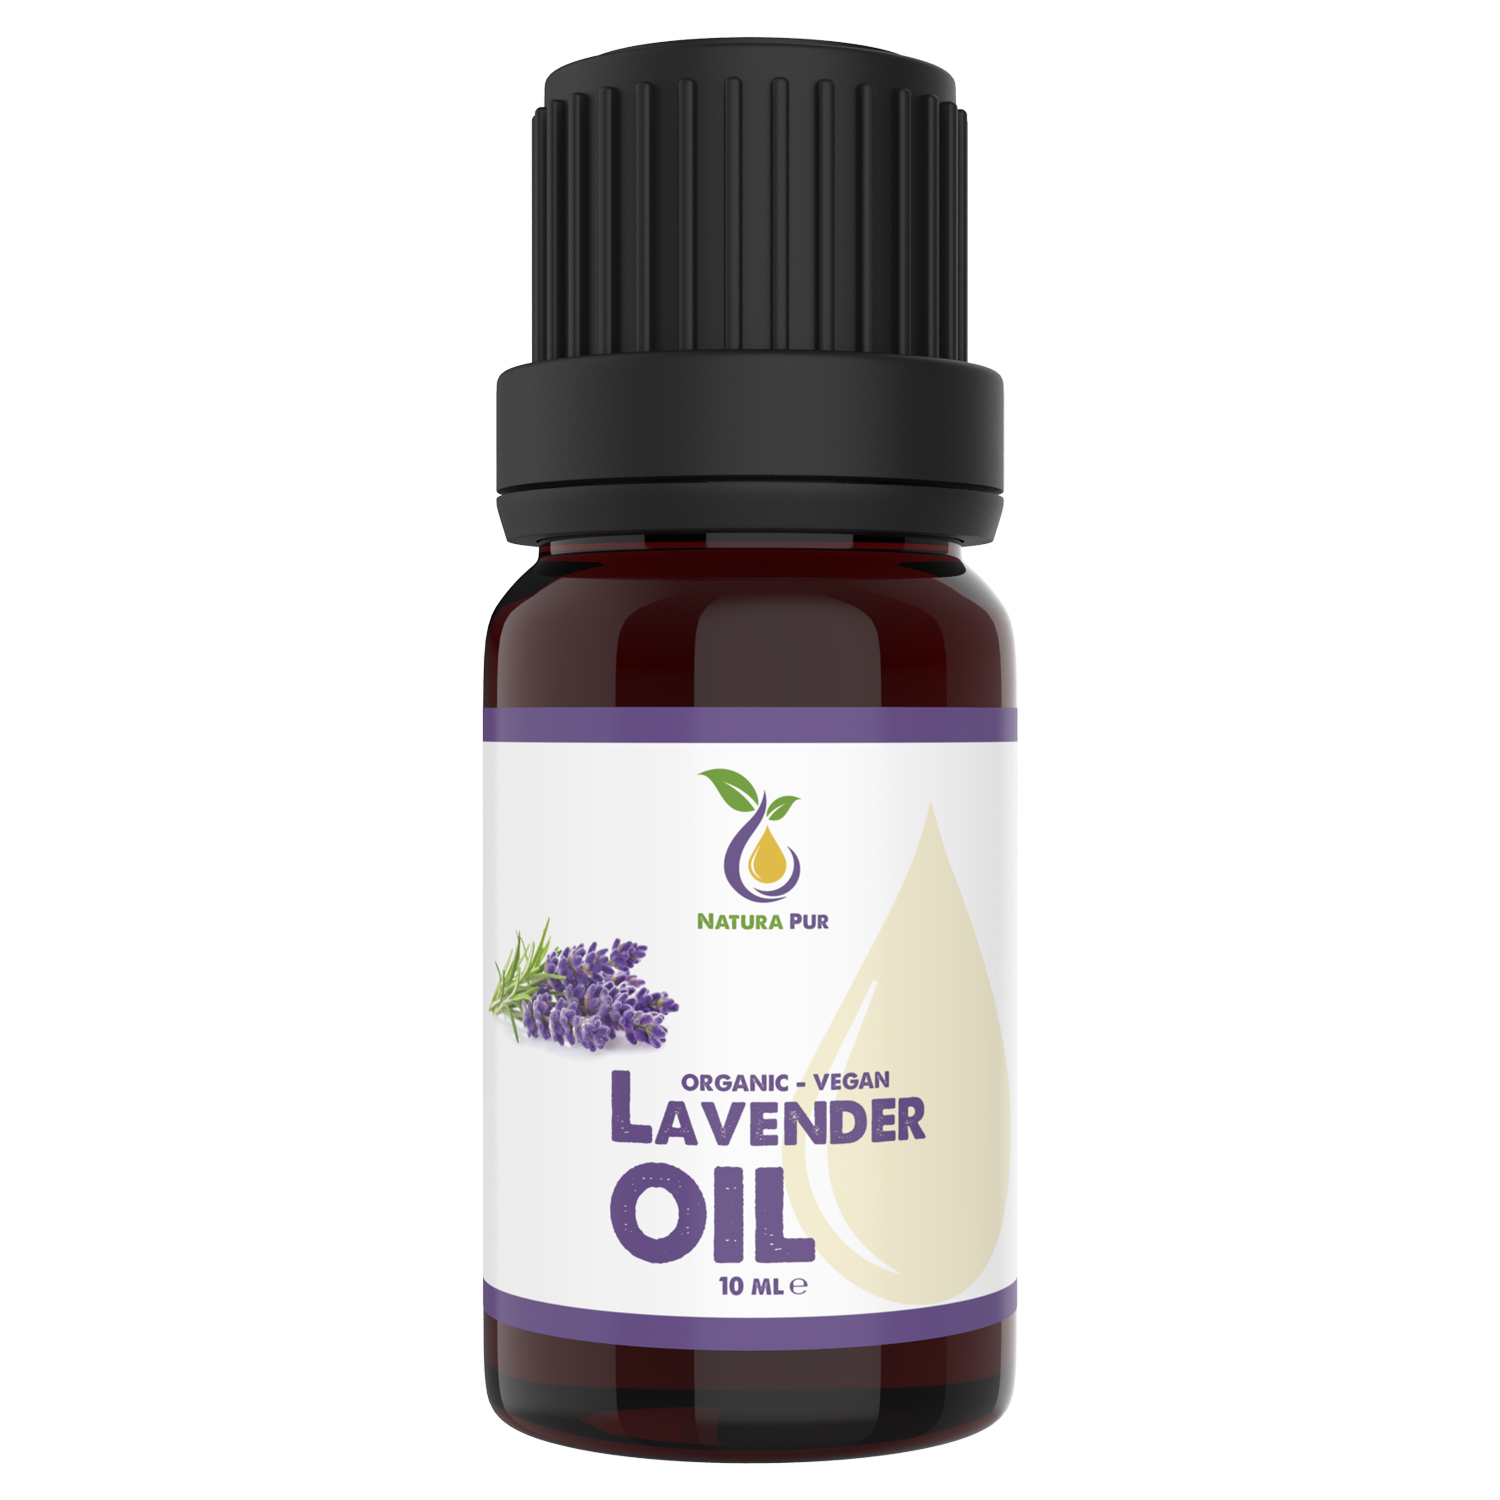 Lavendelöl BIO 10ml - 100% naturreines ätherisches Öl, vegan